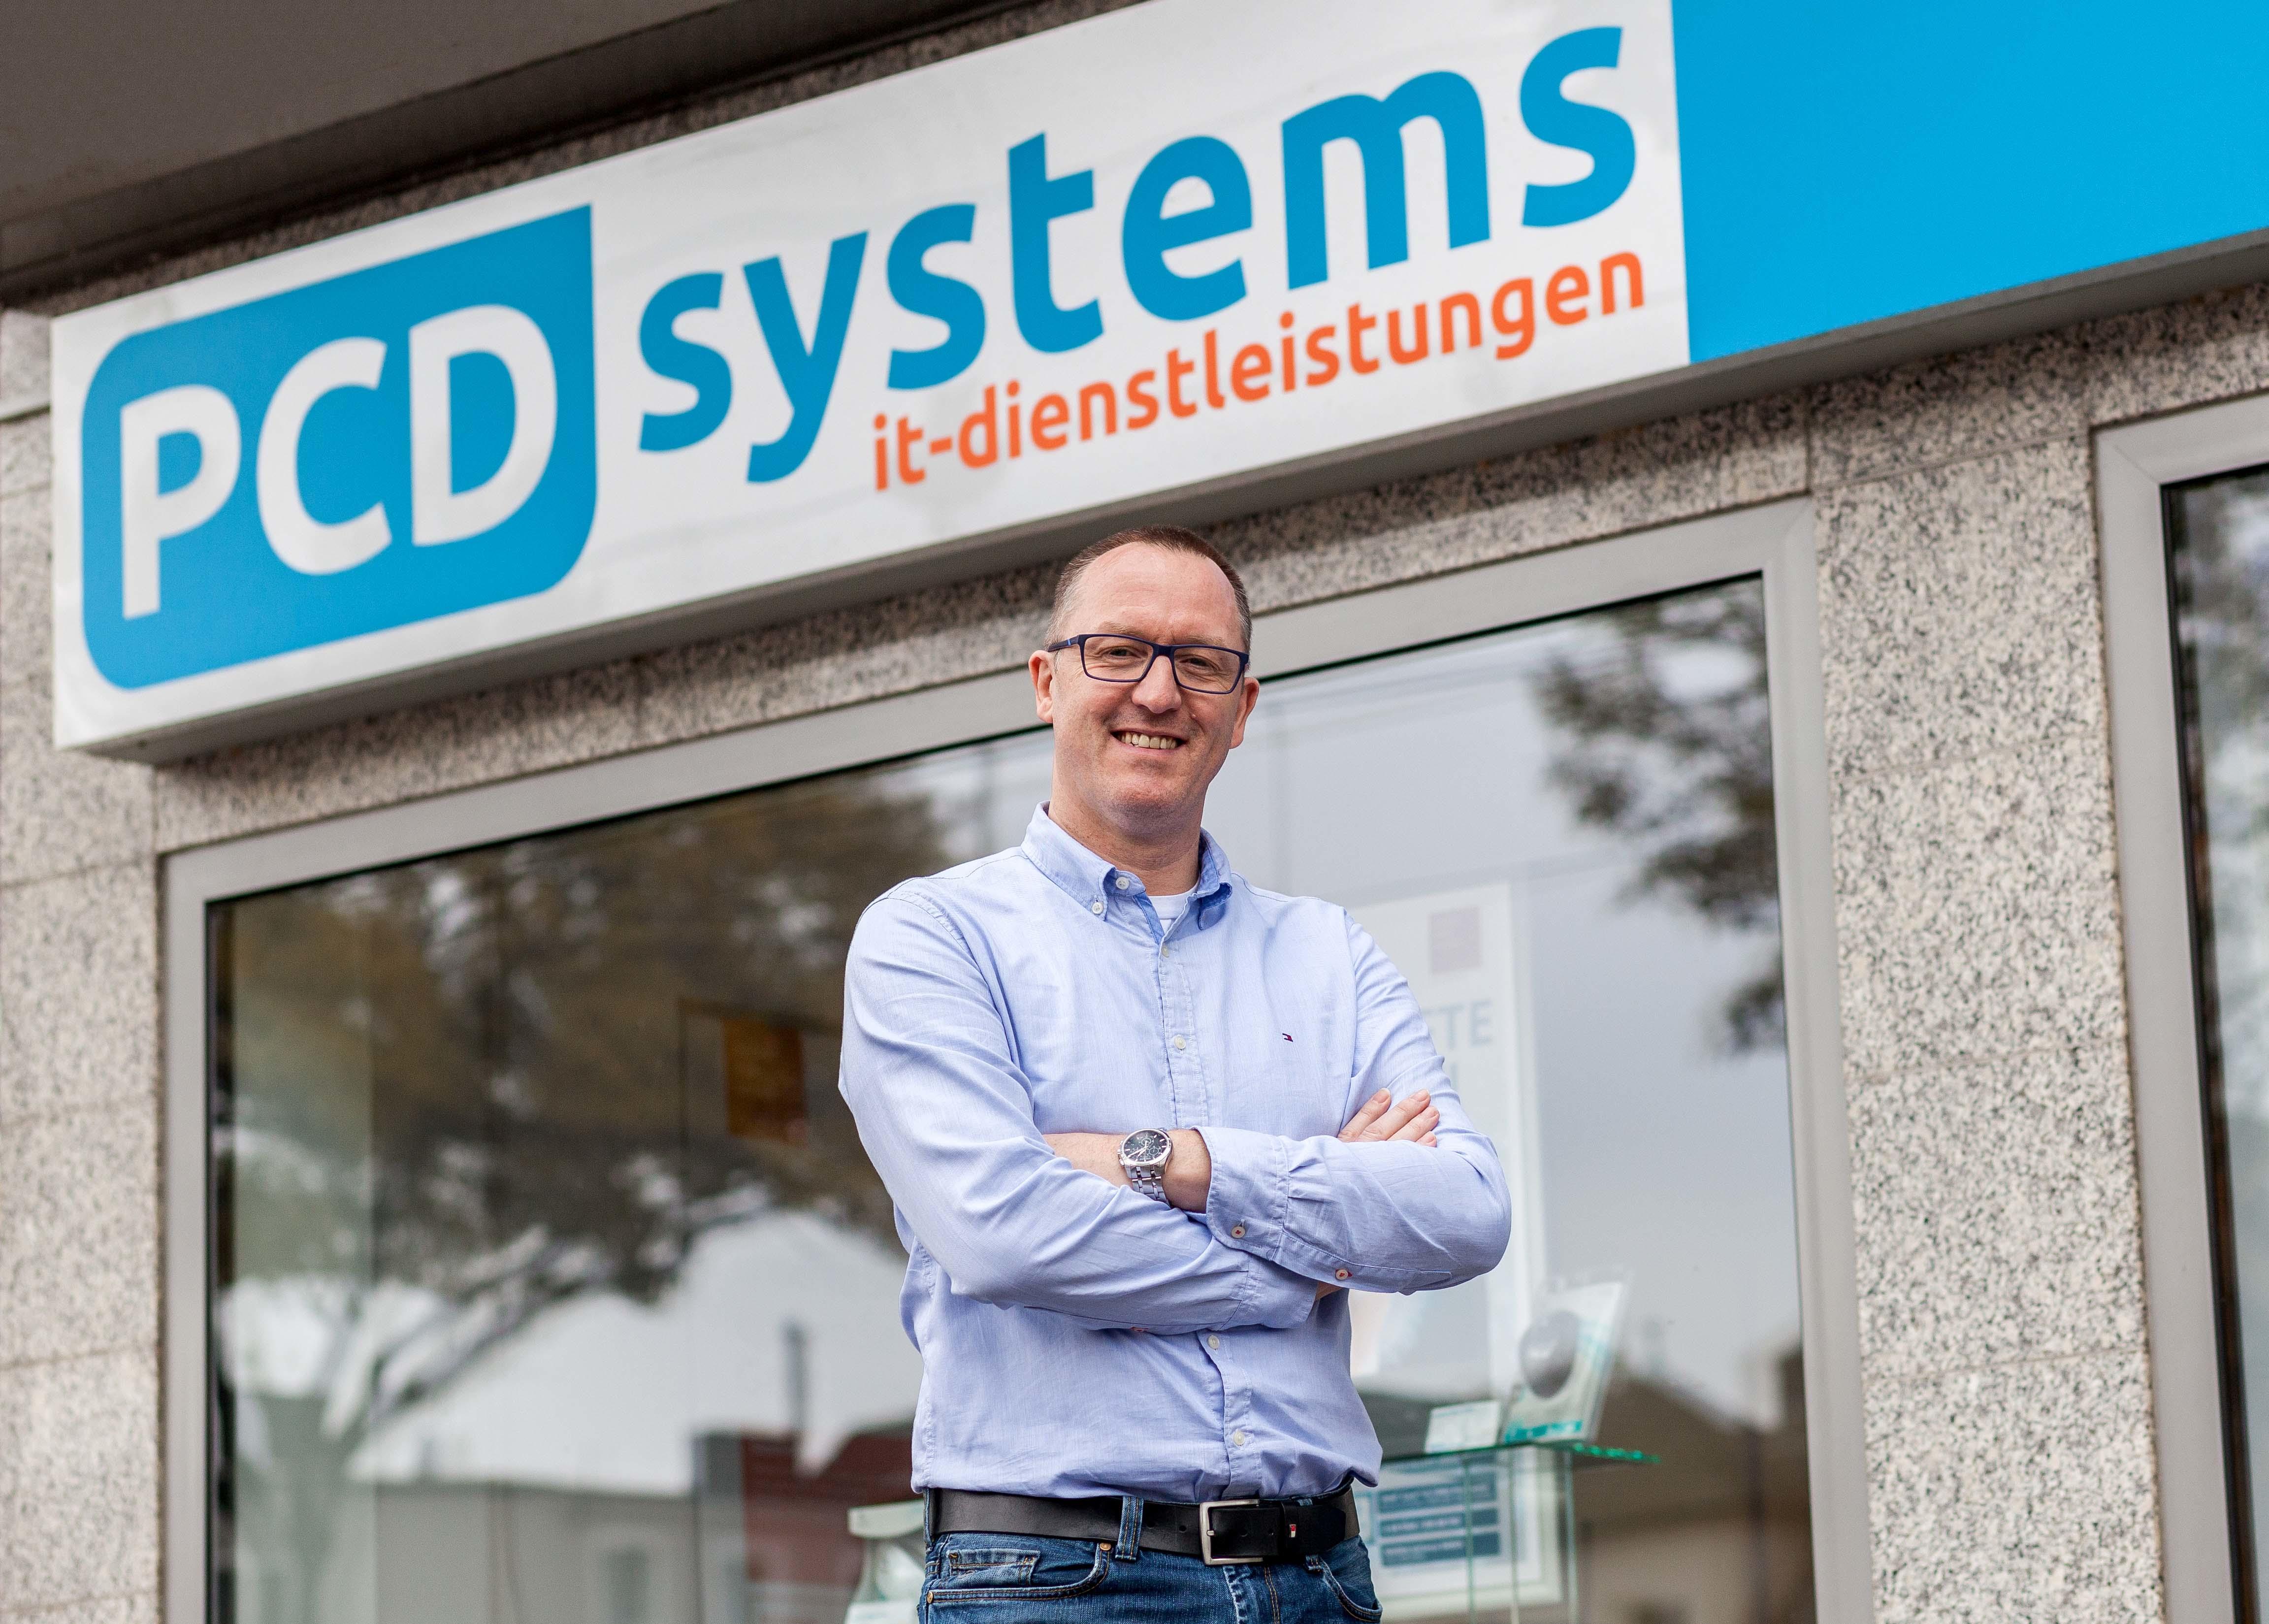 PCD systems - IT Dienstleistungen für Unternehmen, Widdersdorfer Straße 236-240 in Köln